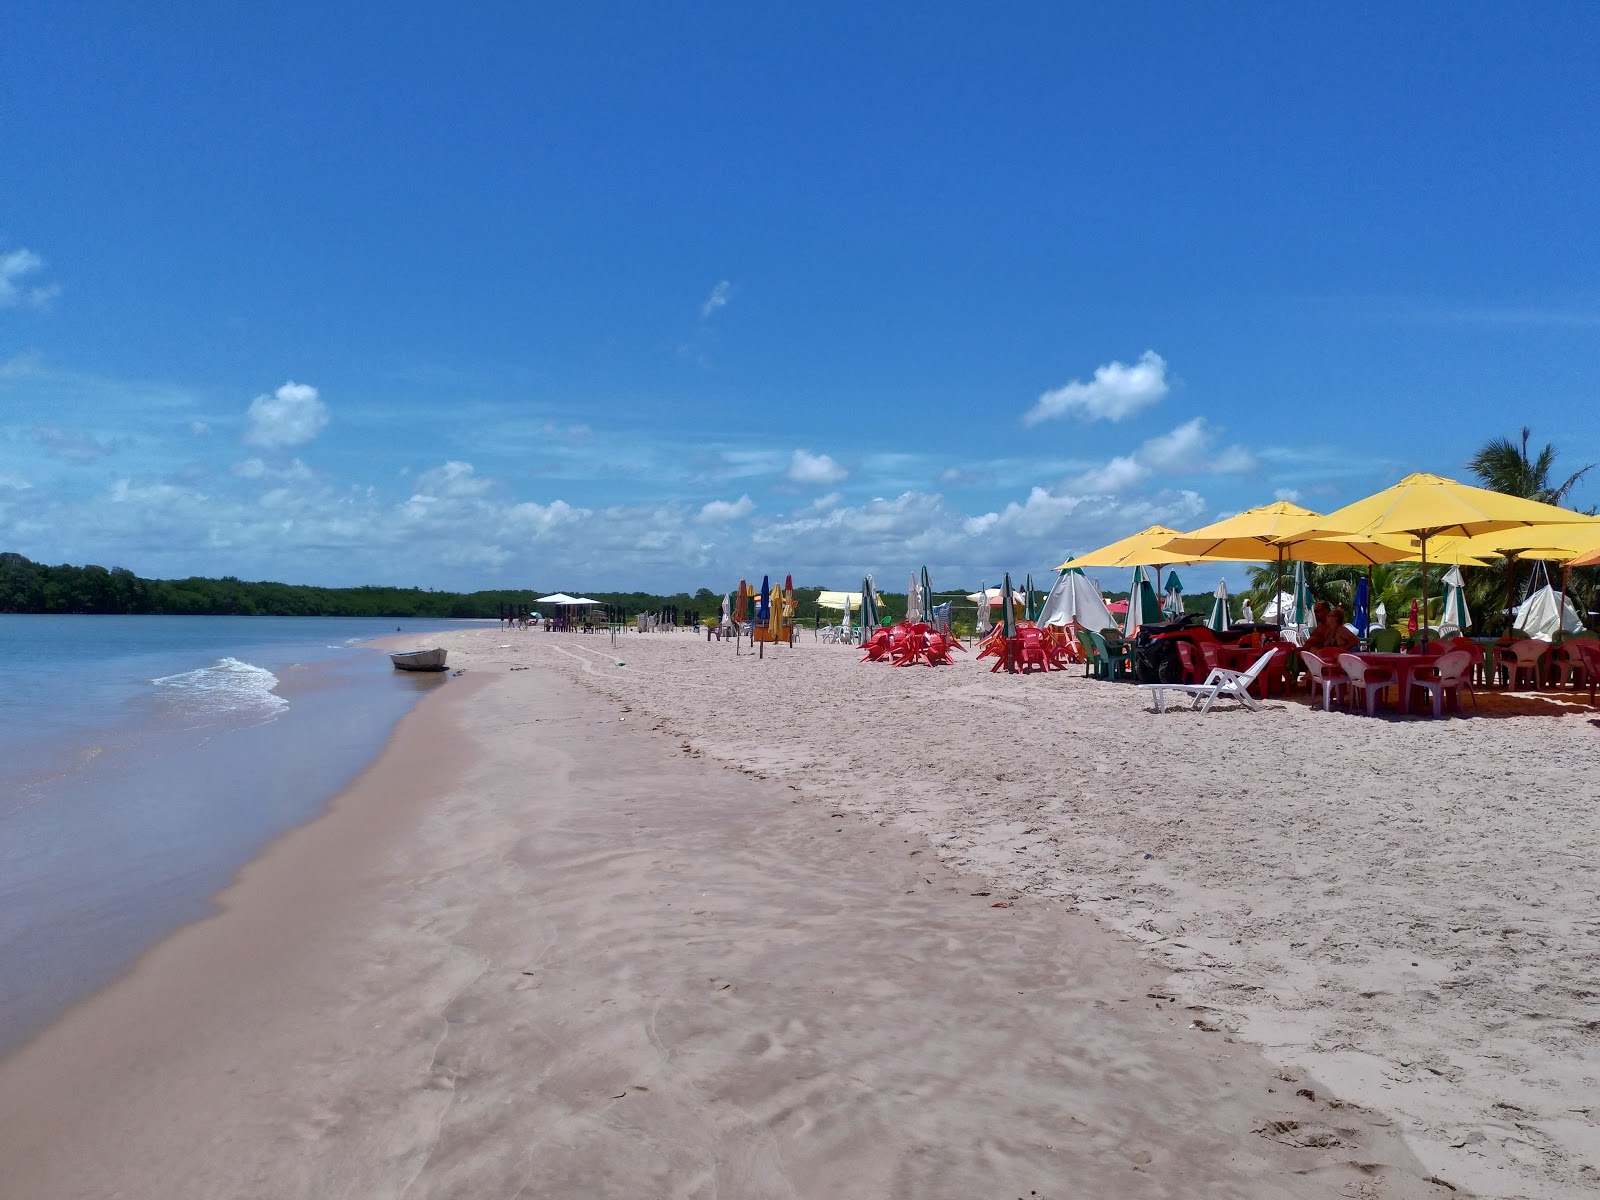 Foto von Praia da Barra mit geräumiger strand